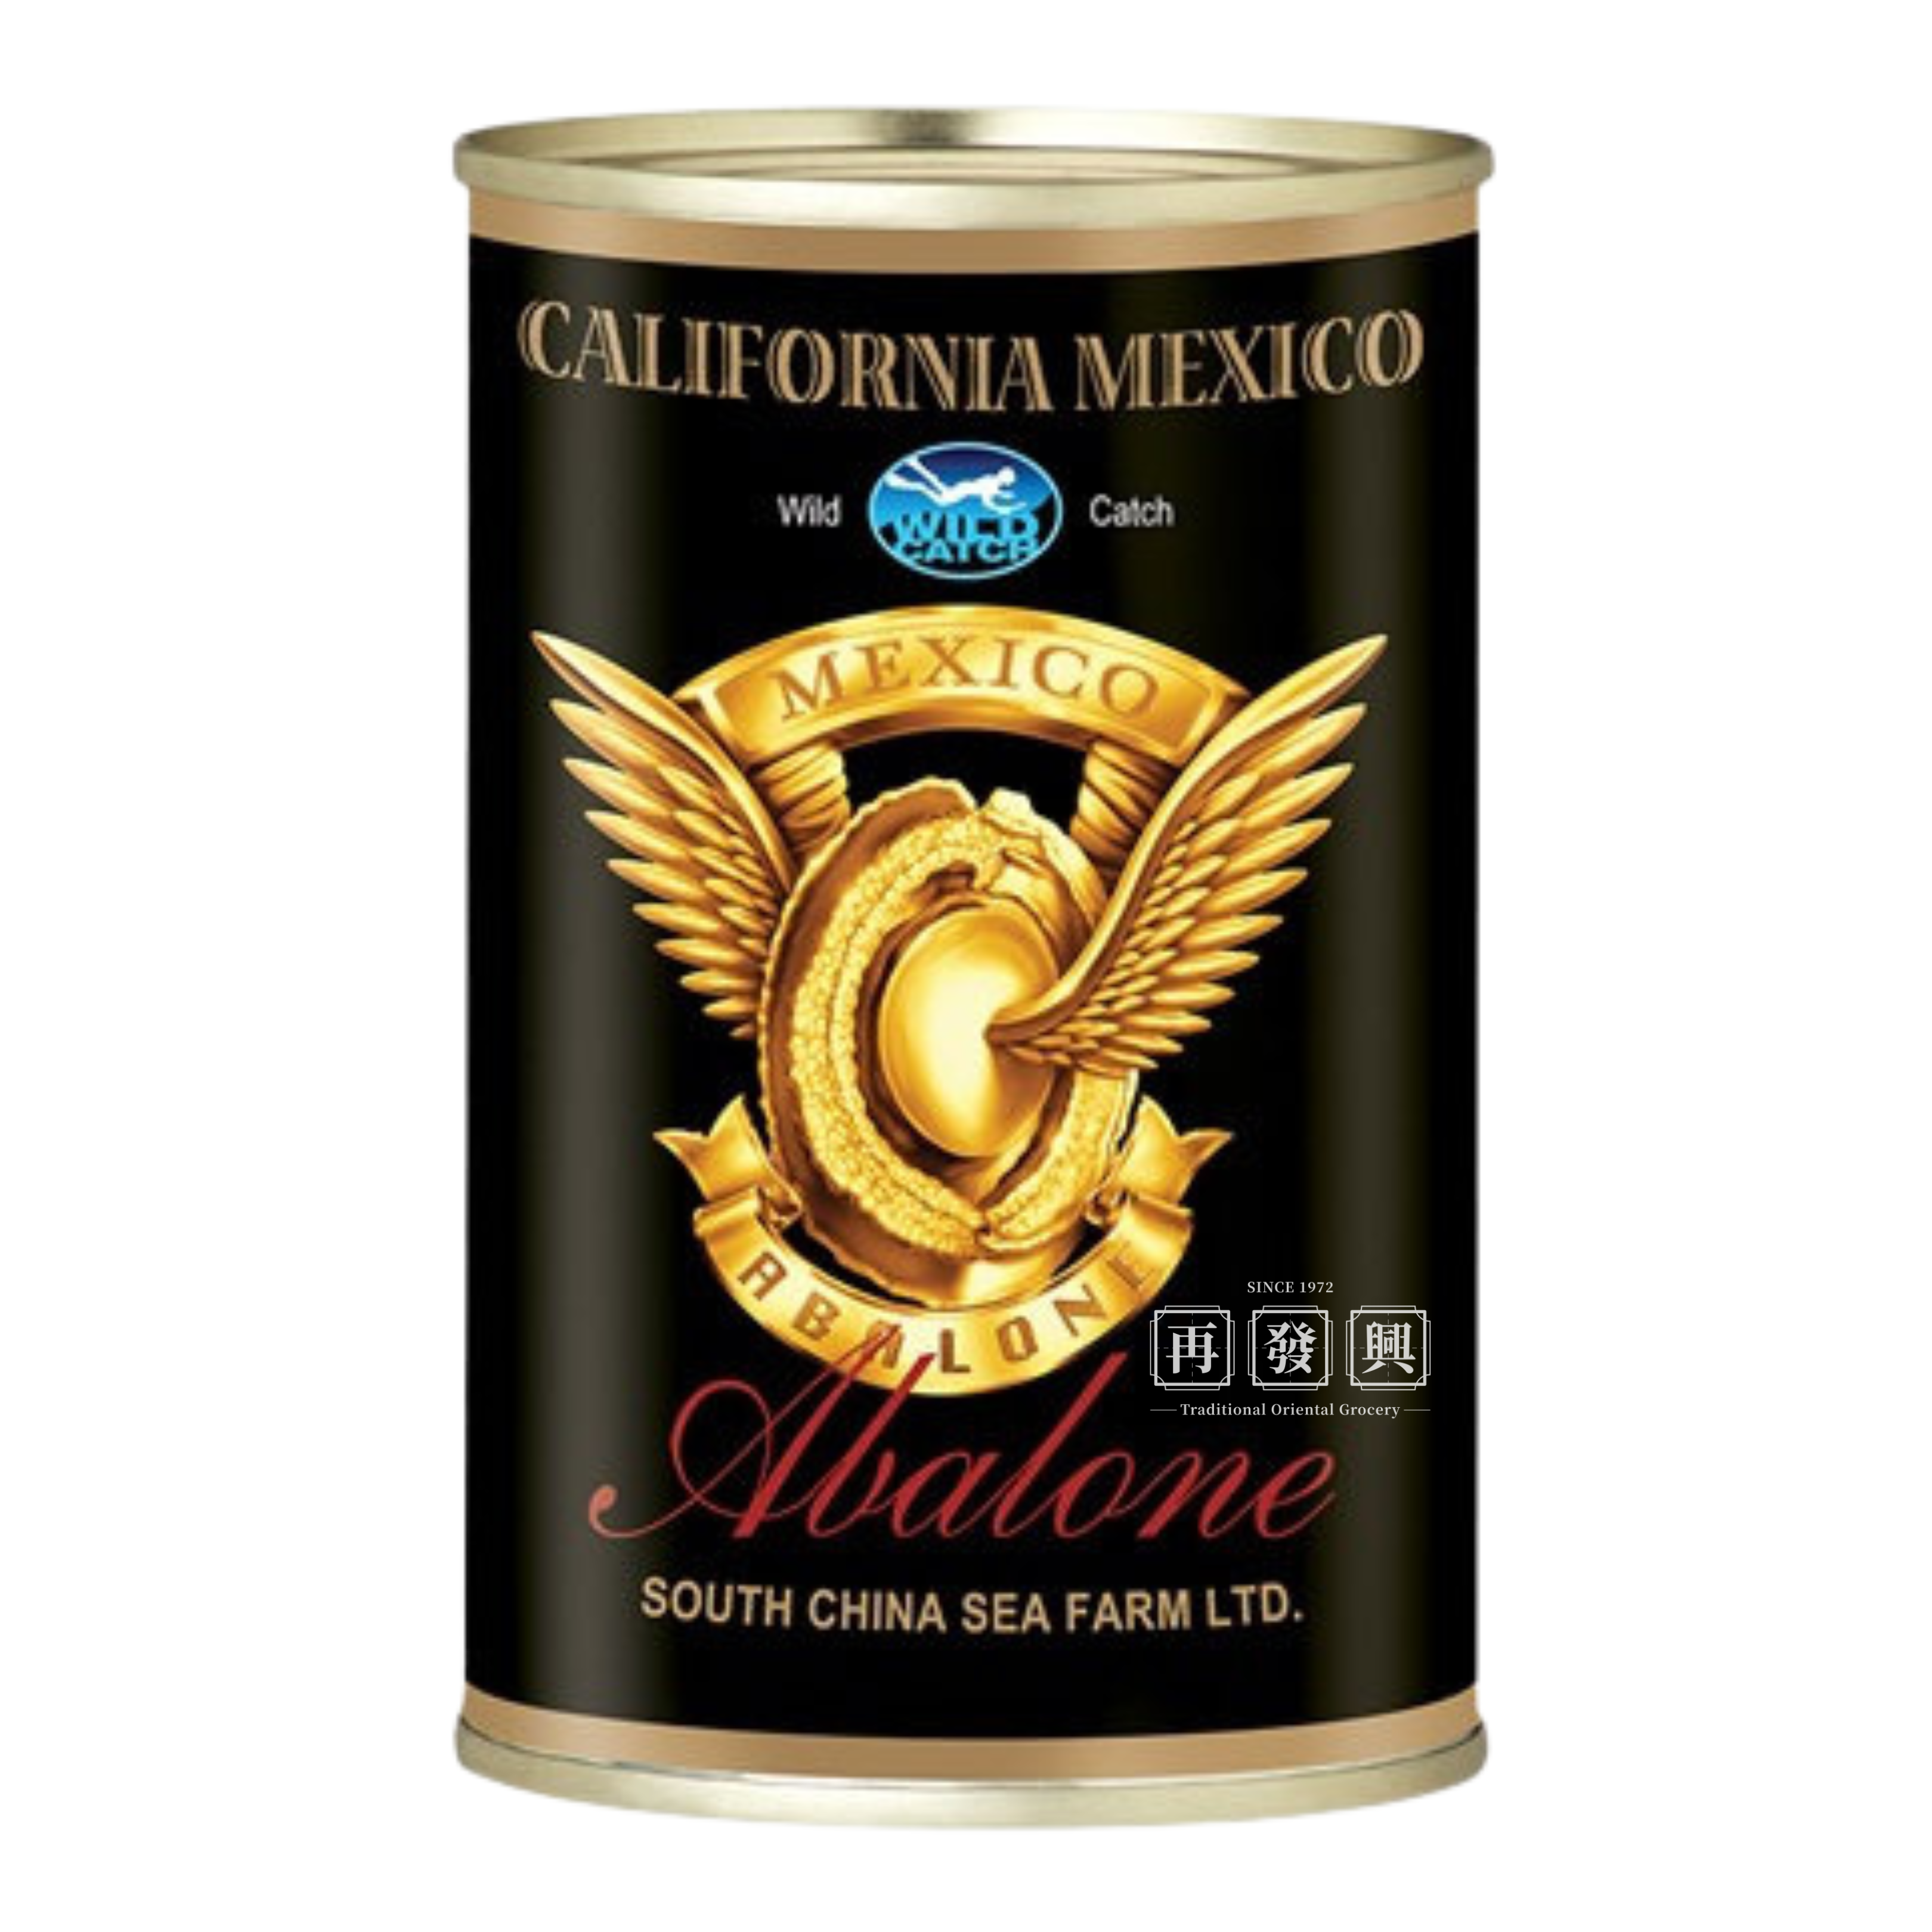 California Mexico Black Gold (1.5pcs) 墨西哥黑金飞轮牌 (1.5头) 218g